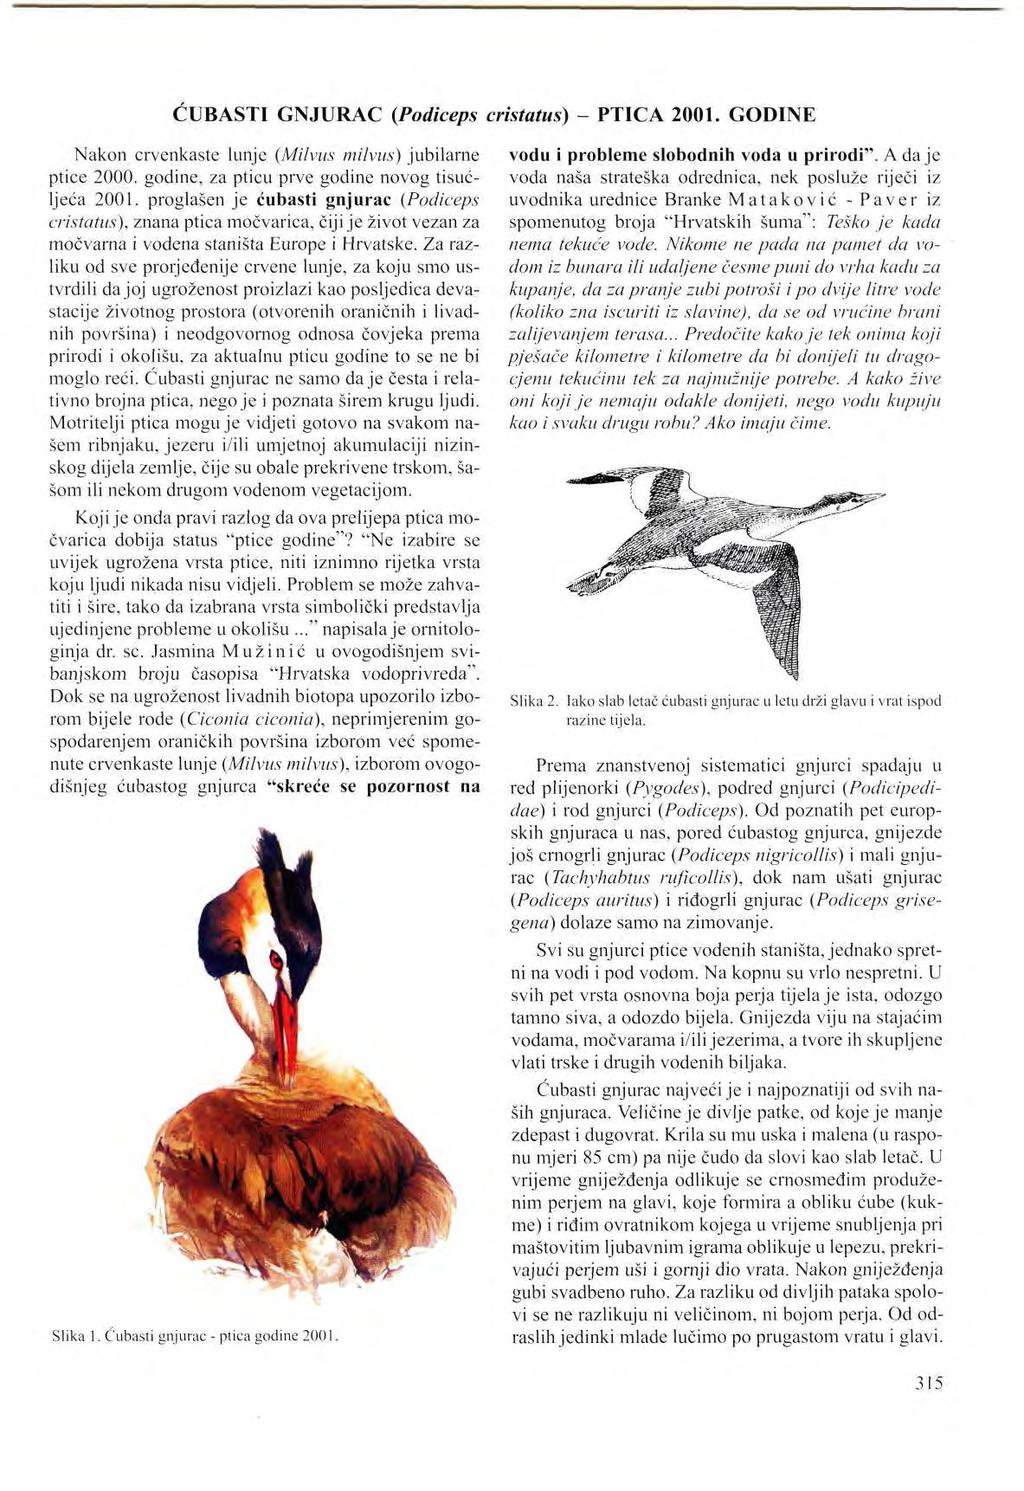 CUBASTI GNJURAC (Podiceps cristatus) - PTICA 2001. GODINE Nakon crvenkaste lunje (Milvus milvus) jubilarne ptice 2000. godine, za pticu prve godine novog tisućljeća 2001.